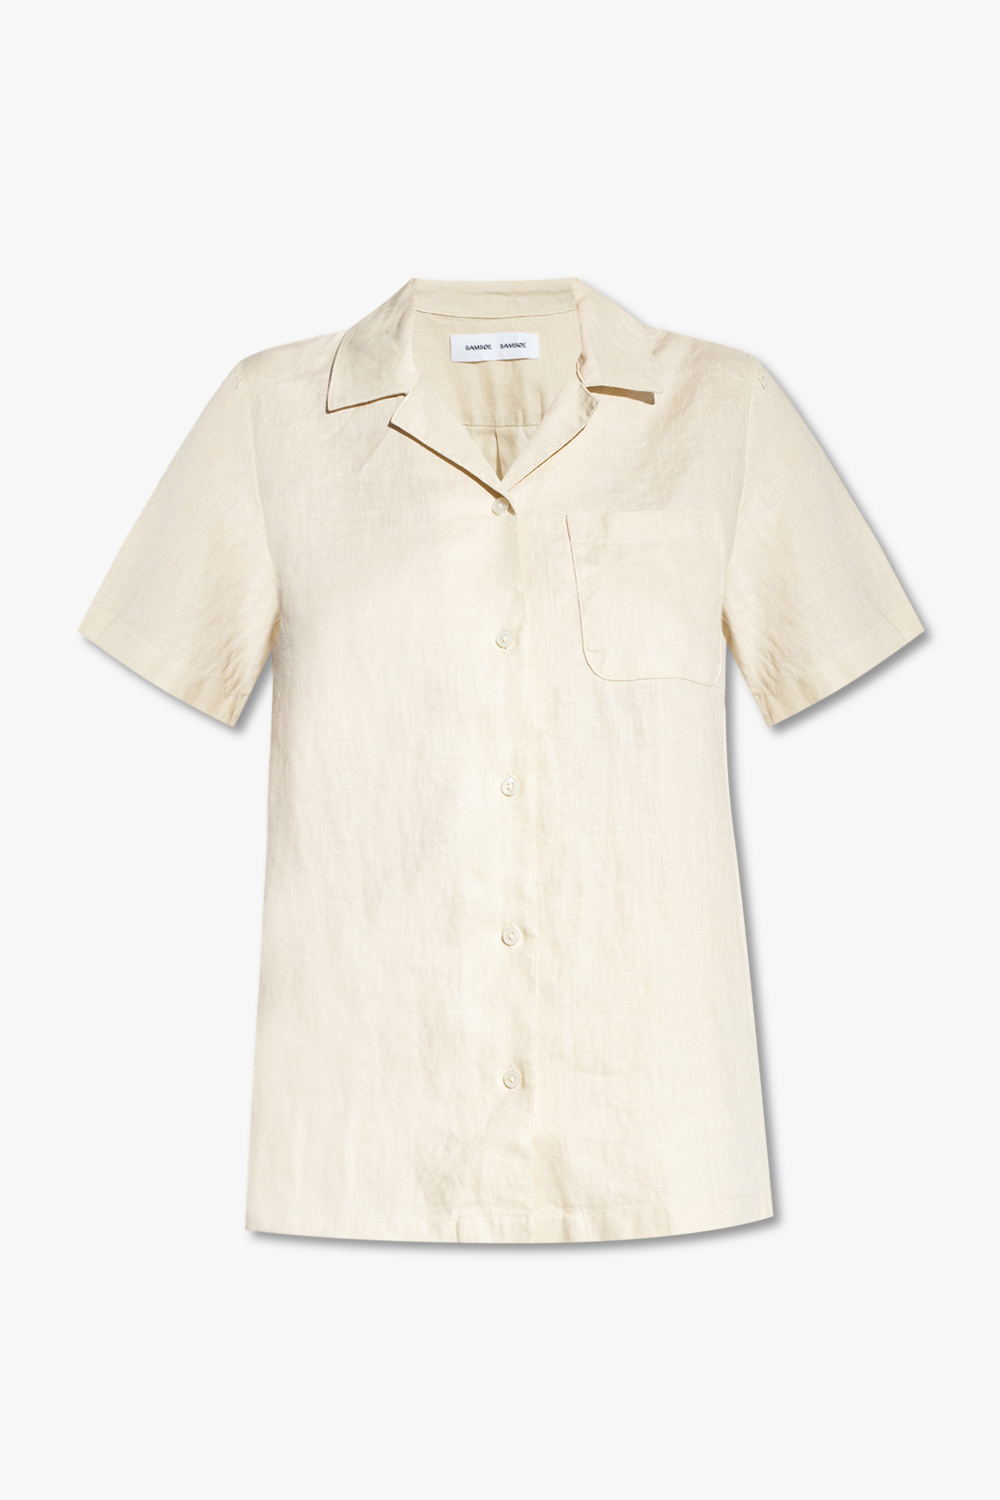 Samsøe Samsøe ‘Oscarine’ linen shirt